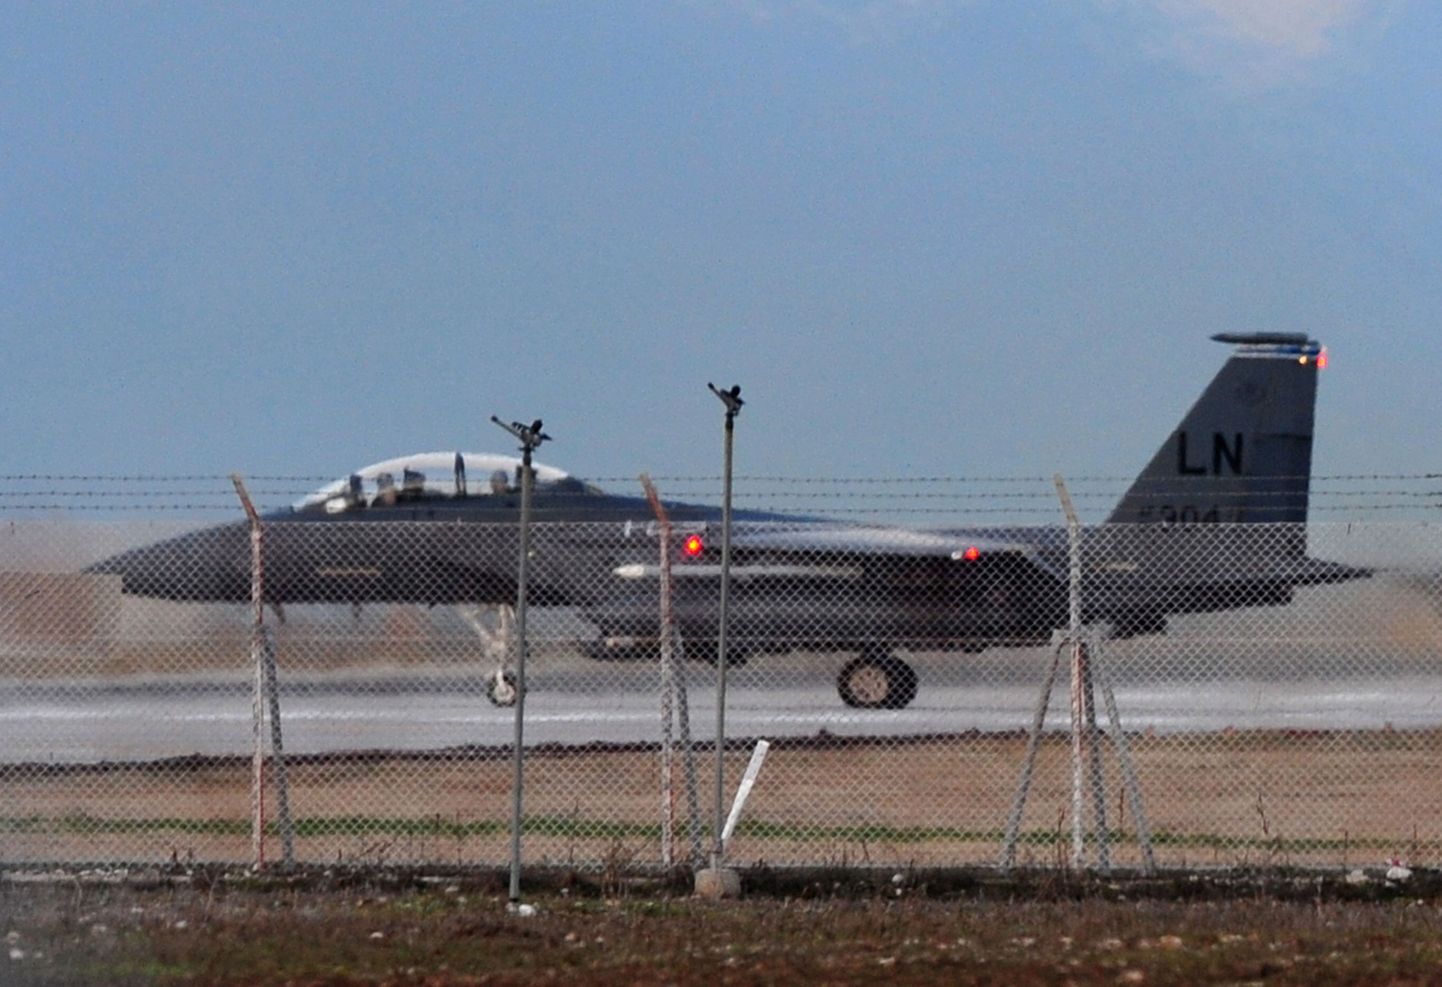 Истребитель F-15